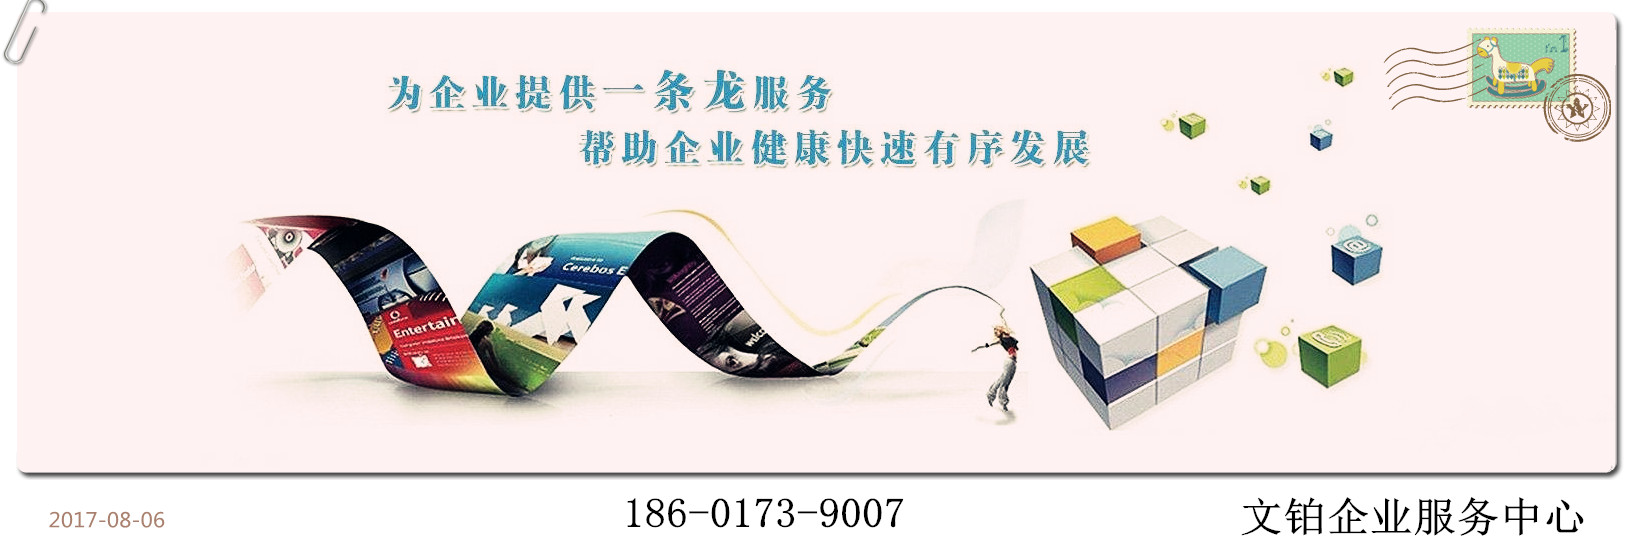 上海注册商业保理公司的相关知识解答_搜狐其